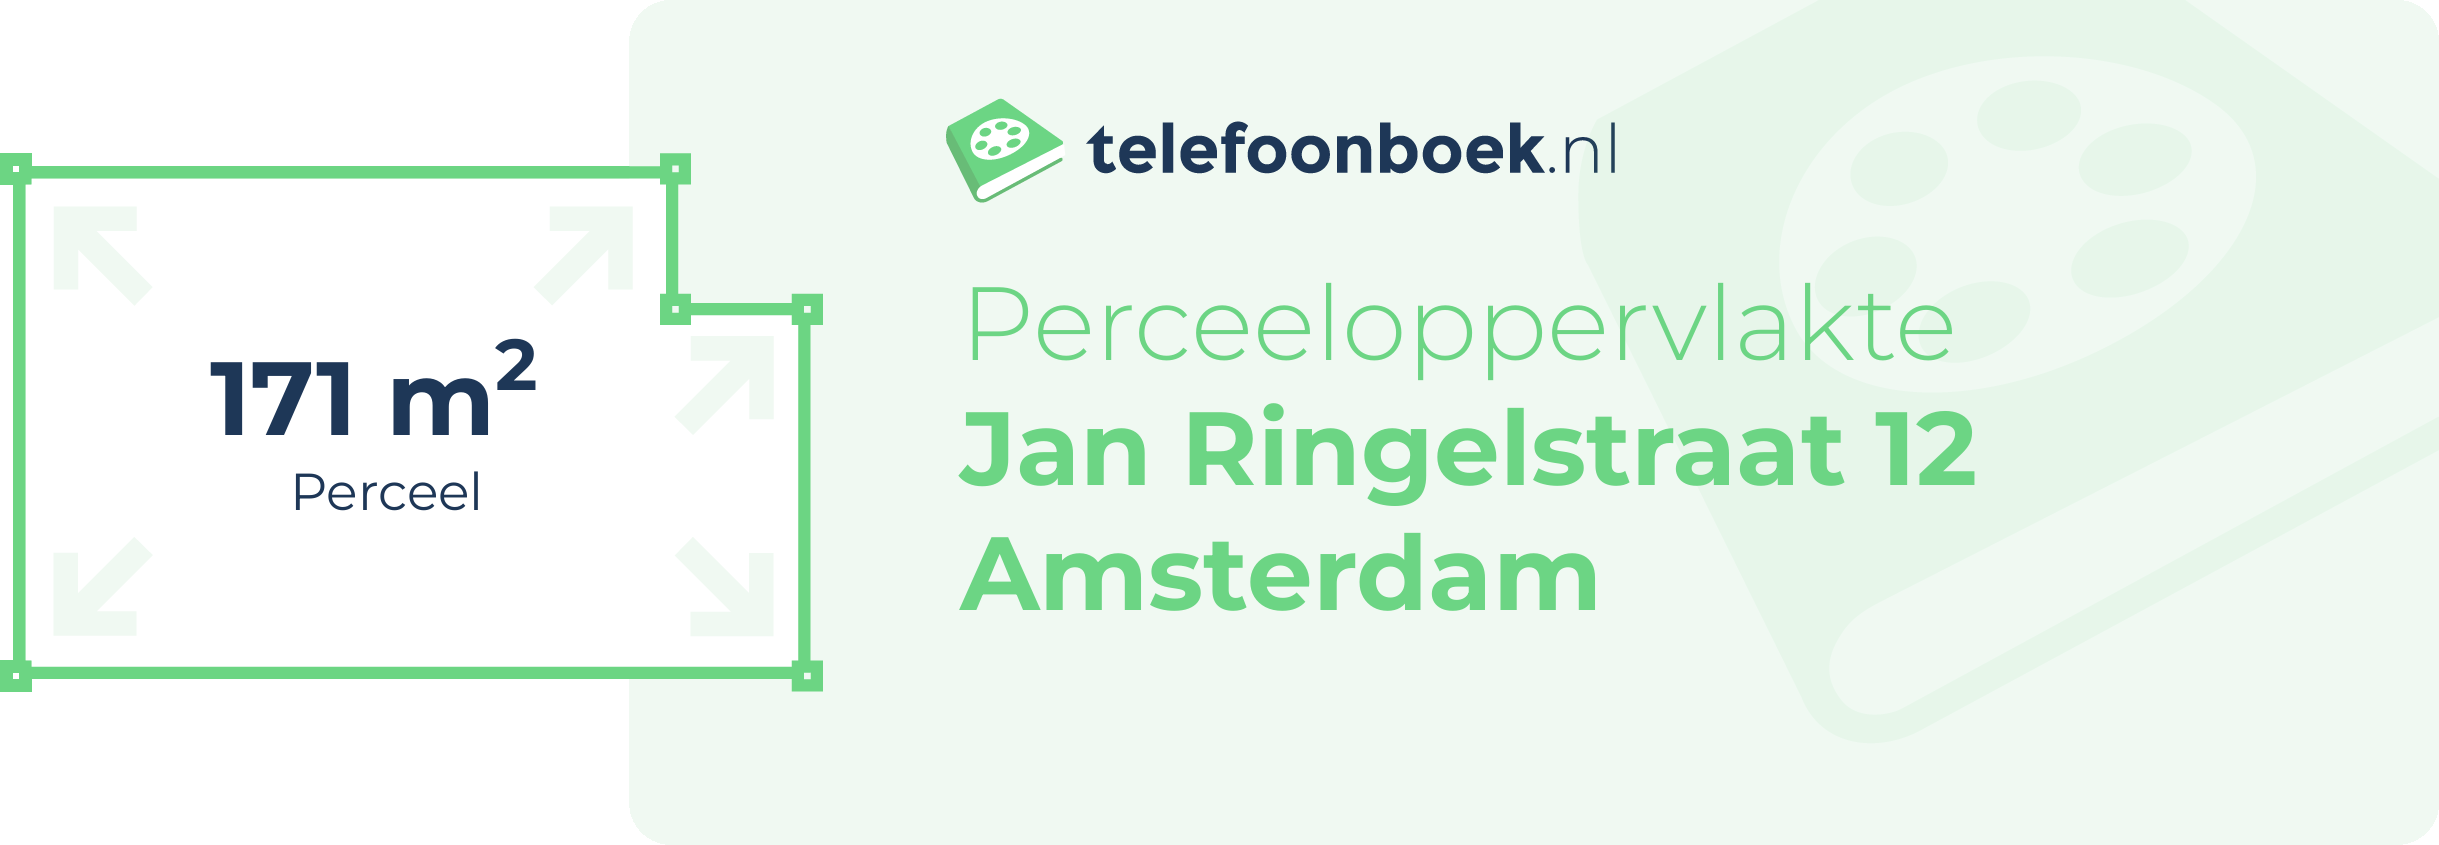 Perceeloppervlakte Jan Ringelstraat 12 Amsterdam